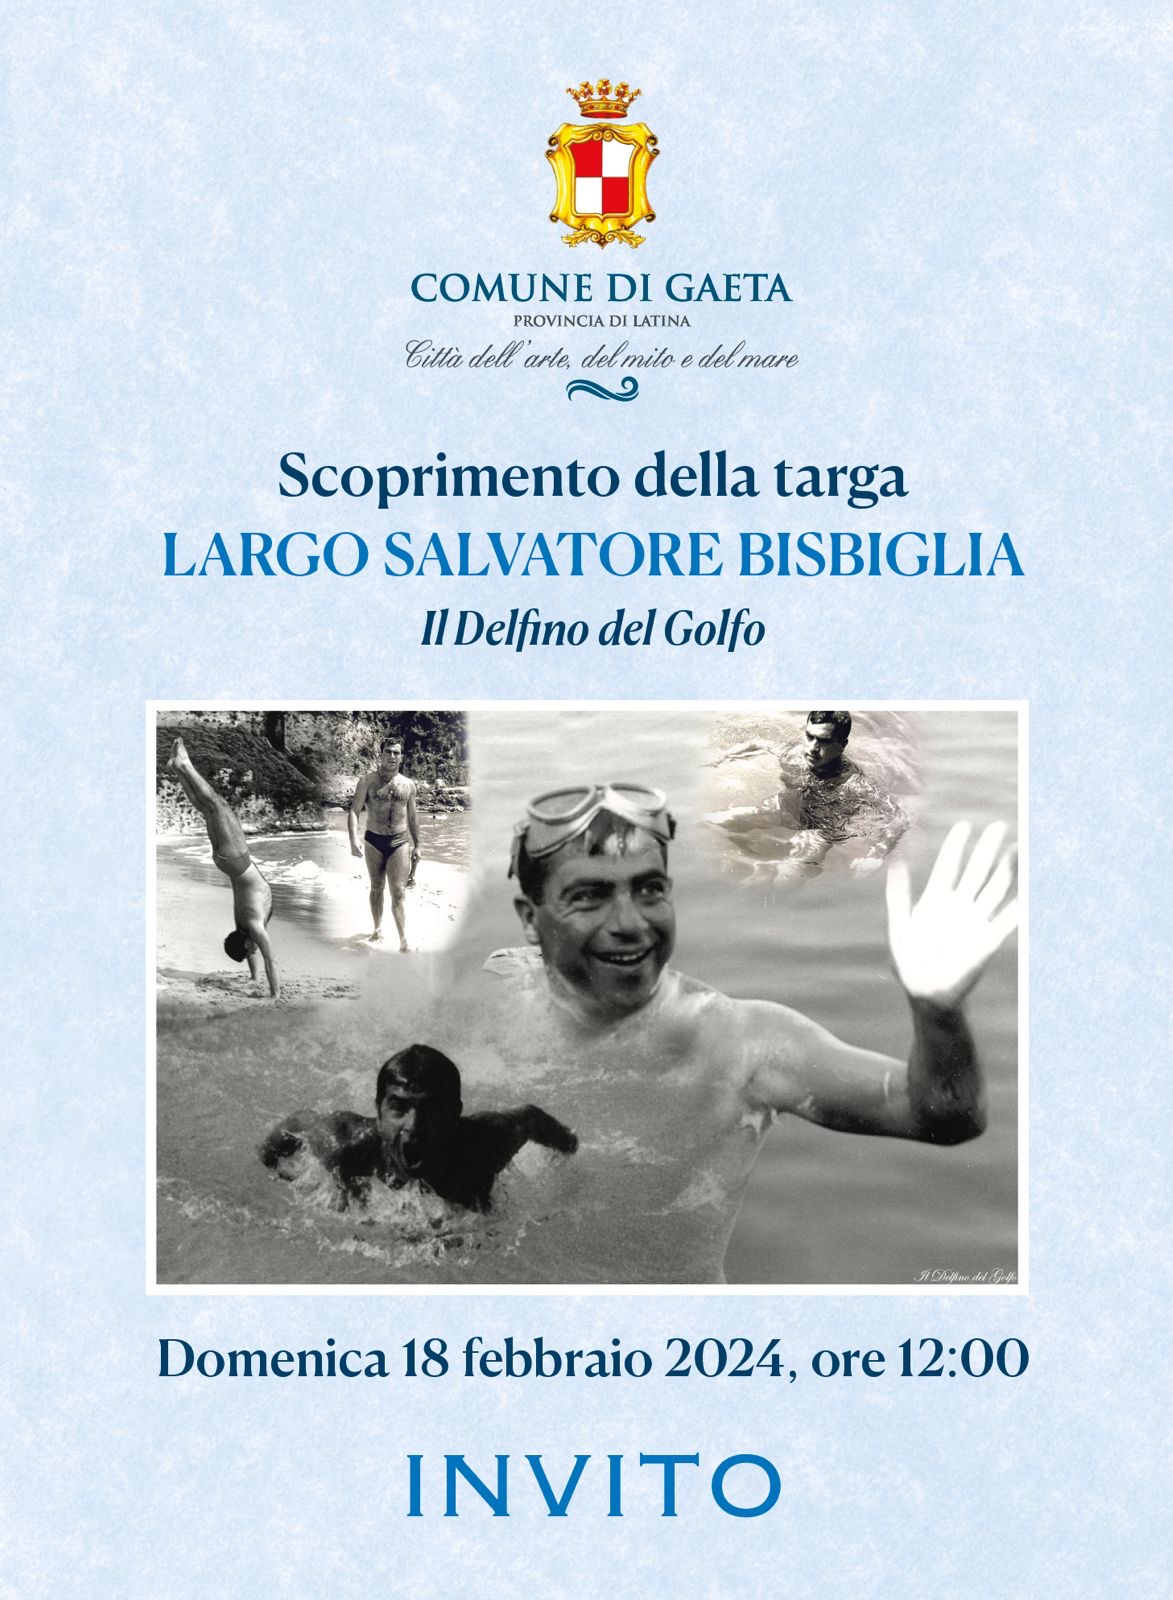 Domenica 18 febbraio, lo scoprimento della targa "Largo Salvatore Bisbiglia", il "Delfino del Golfo"